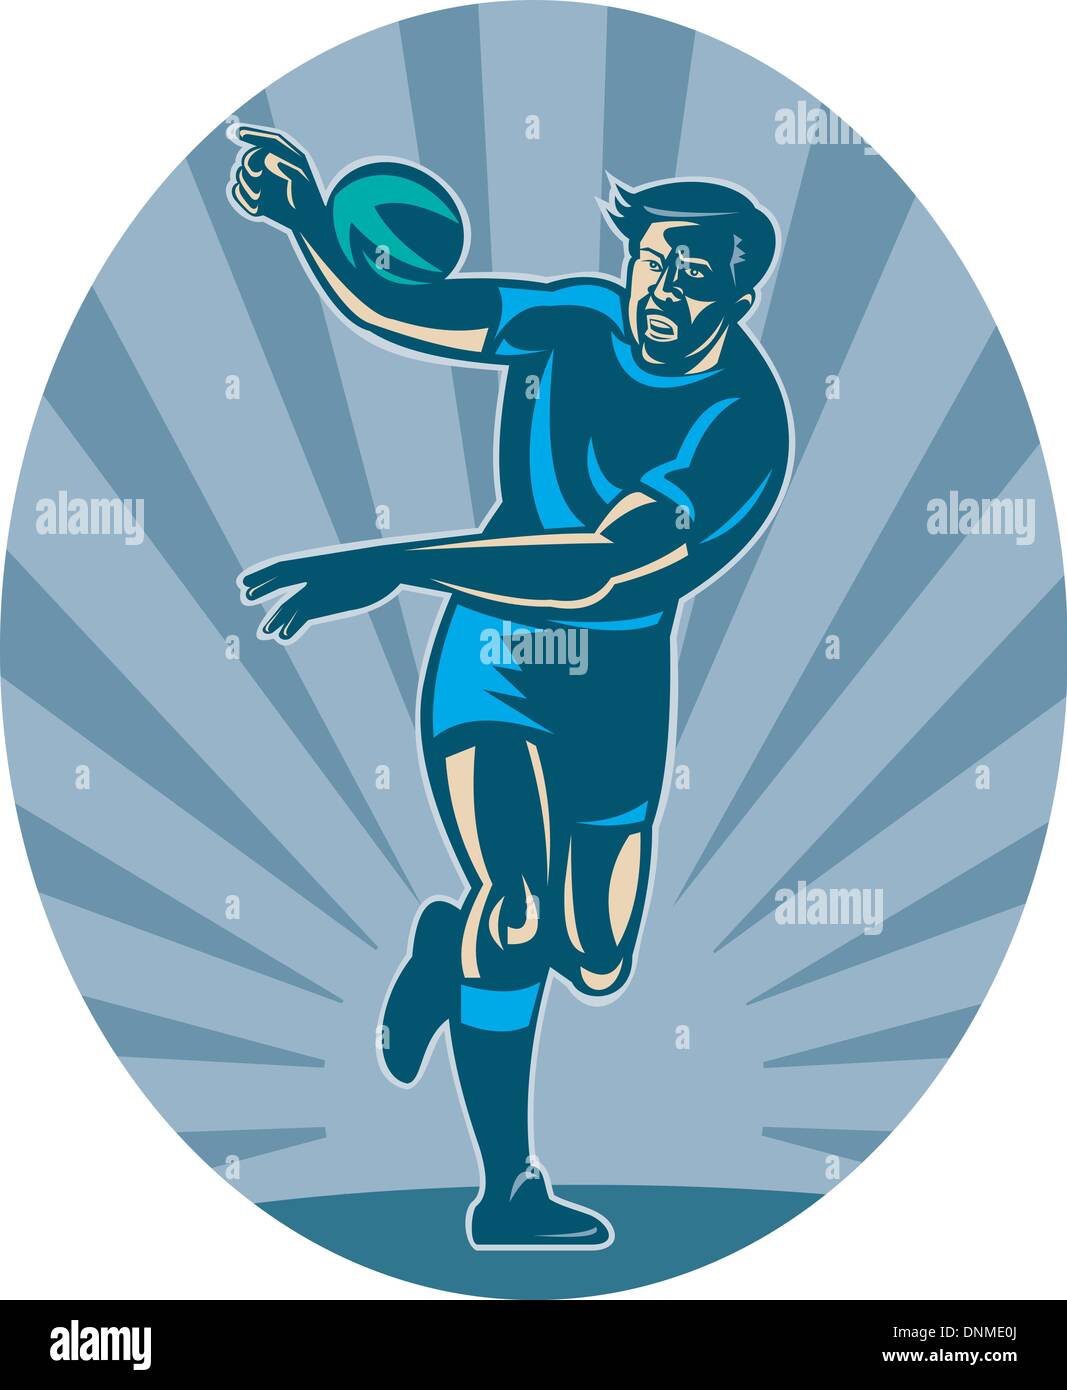 Ilustración de un jugador de rugby con la bola y pasar Ilustración del Vector